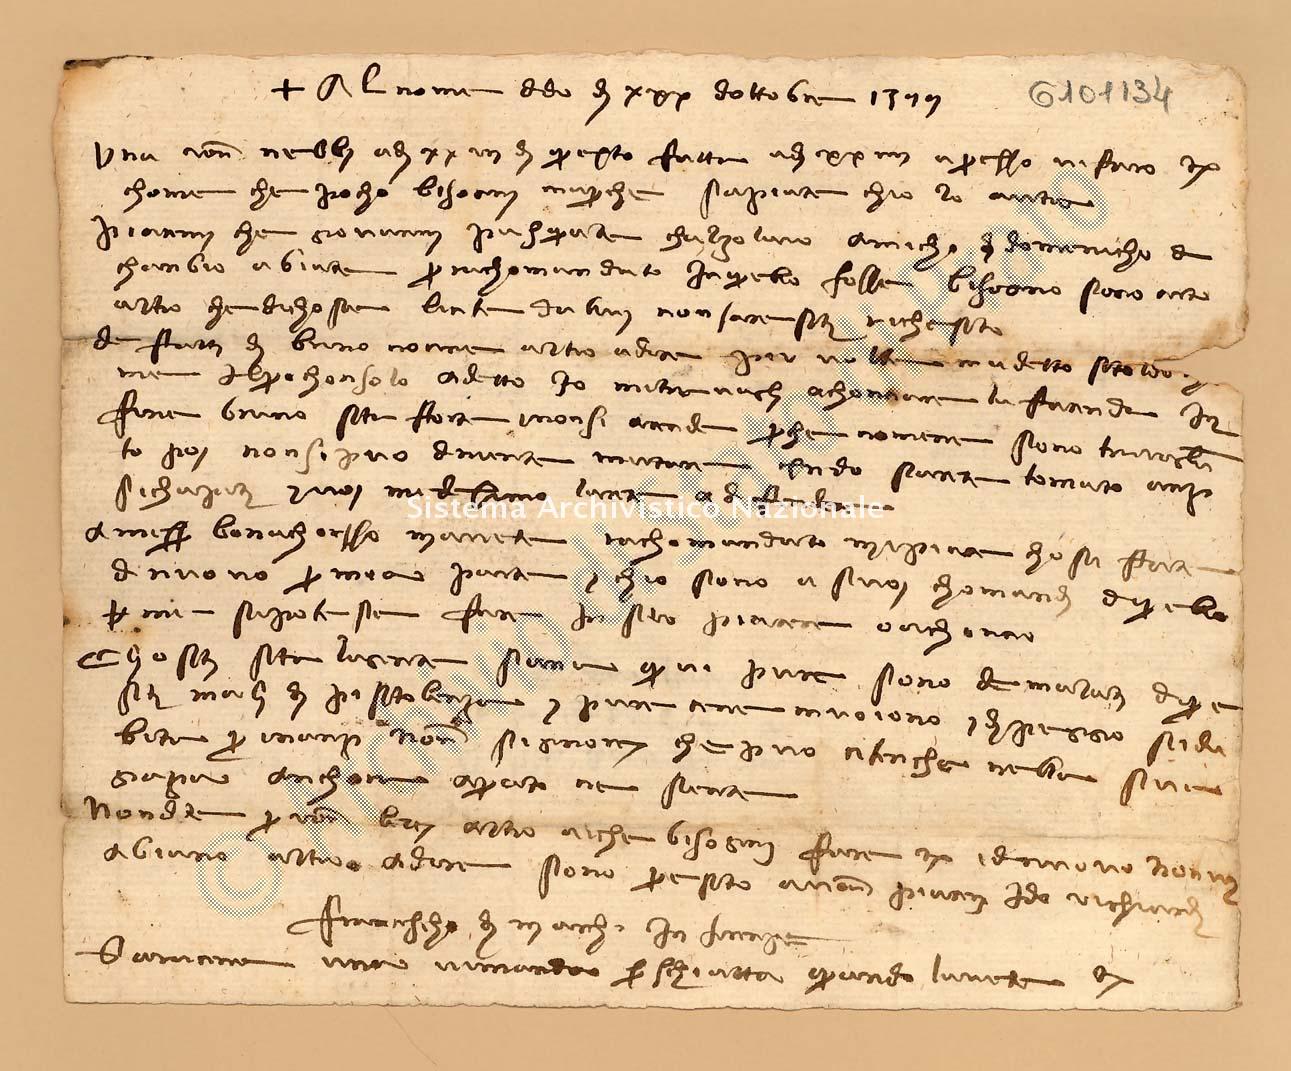 Archivio di Stato di Prato, Fondo Datini, Lettere di Francesco Datini a vari, 1086.11 Lettere Di Datini Francesco Di Marco a Baldo Di Vestro Da Prato, Ser (busta 1086, inserto 11, codice 6101134)